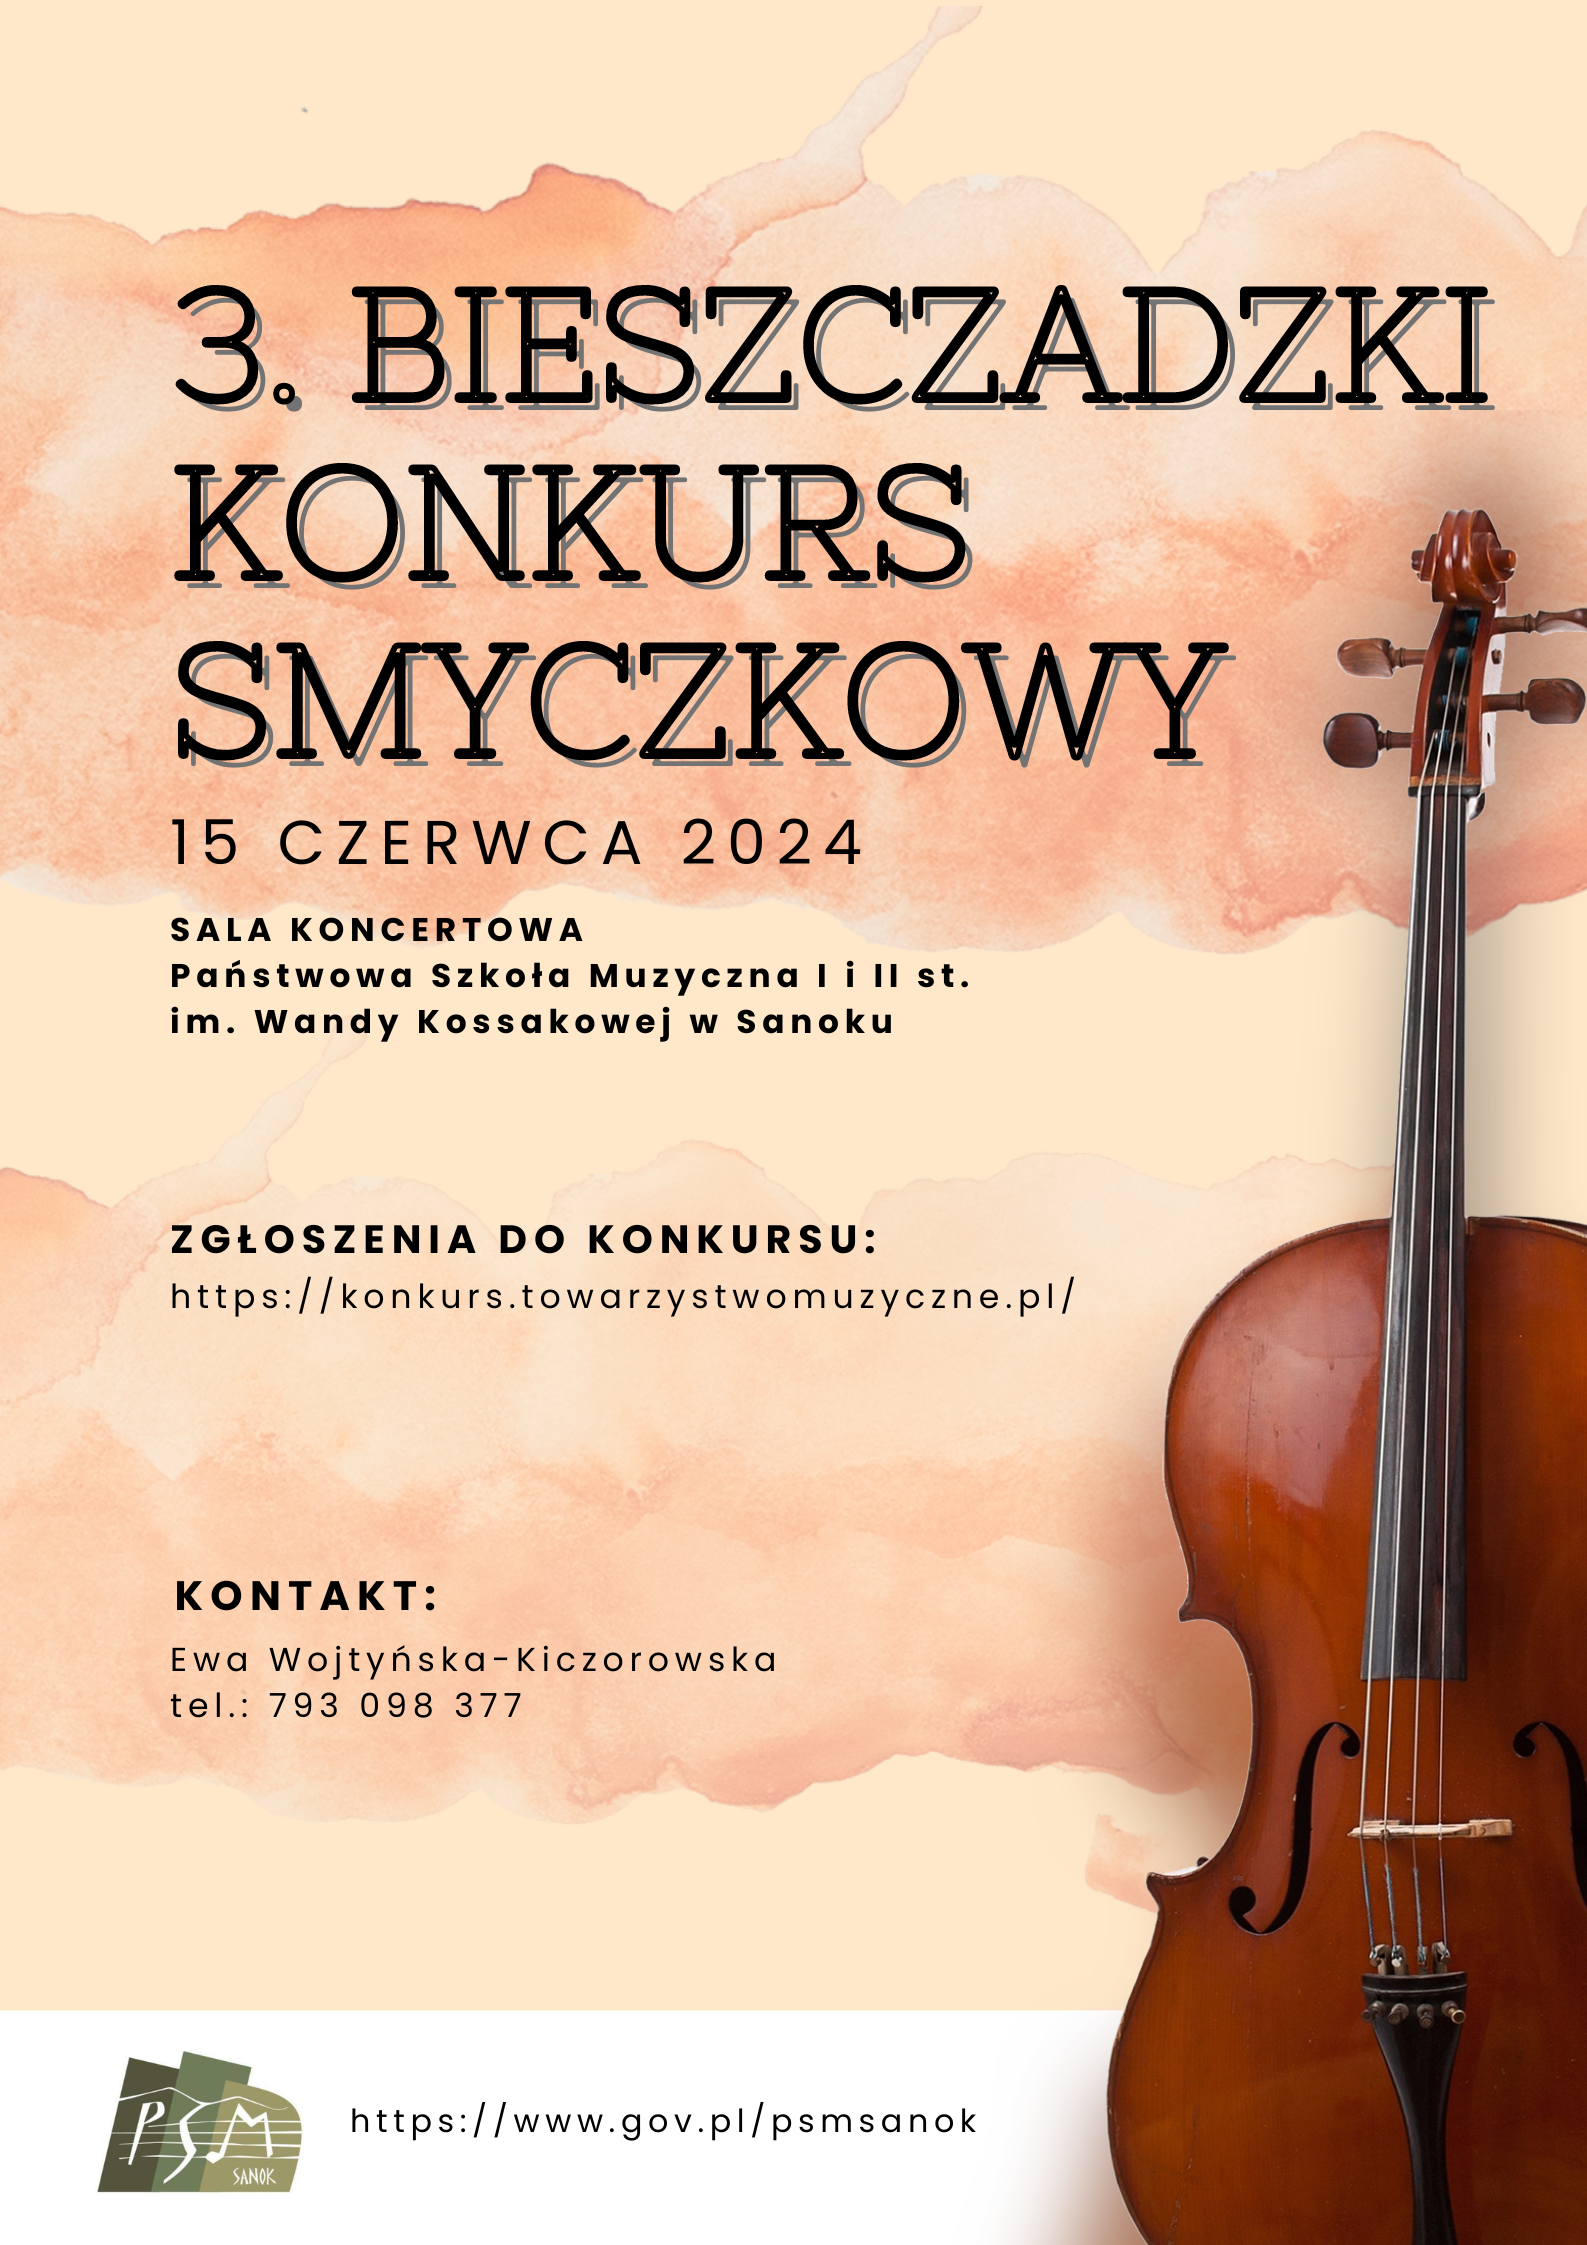 Plakat - 3 Bieszczadzki Konkurs Skrzypcowy 15 czerwca 2024. Pomarańczowe tło, z prawej strony skrzypce, na dole logo szkoły